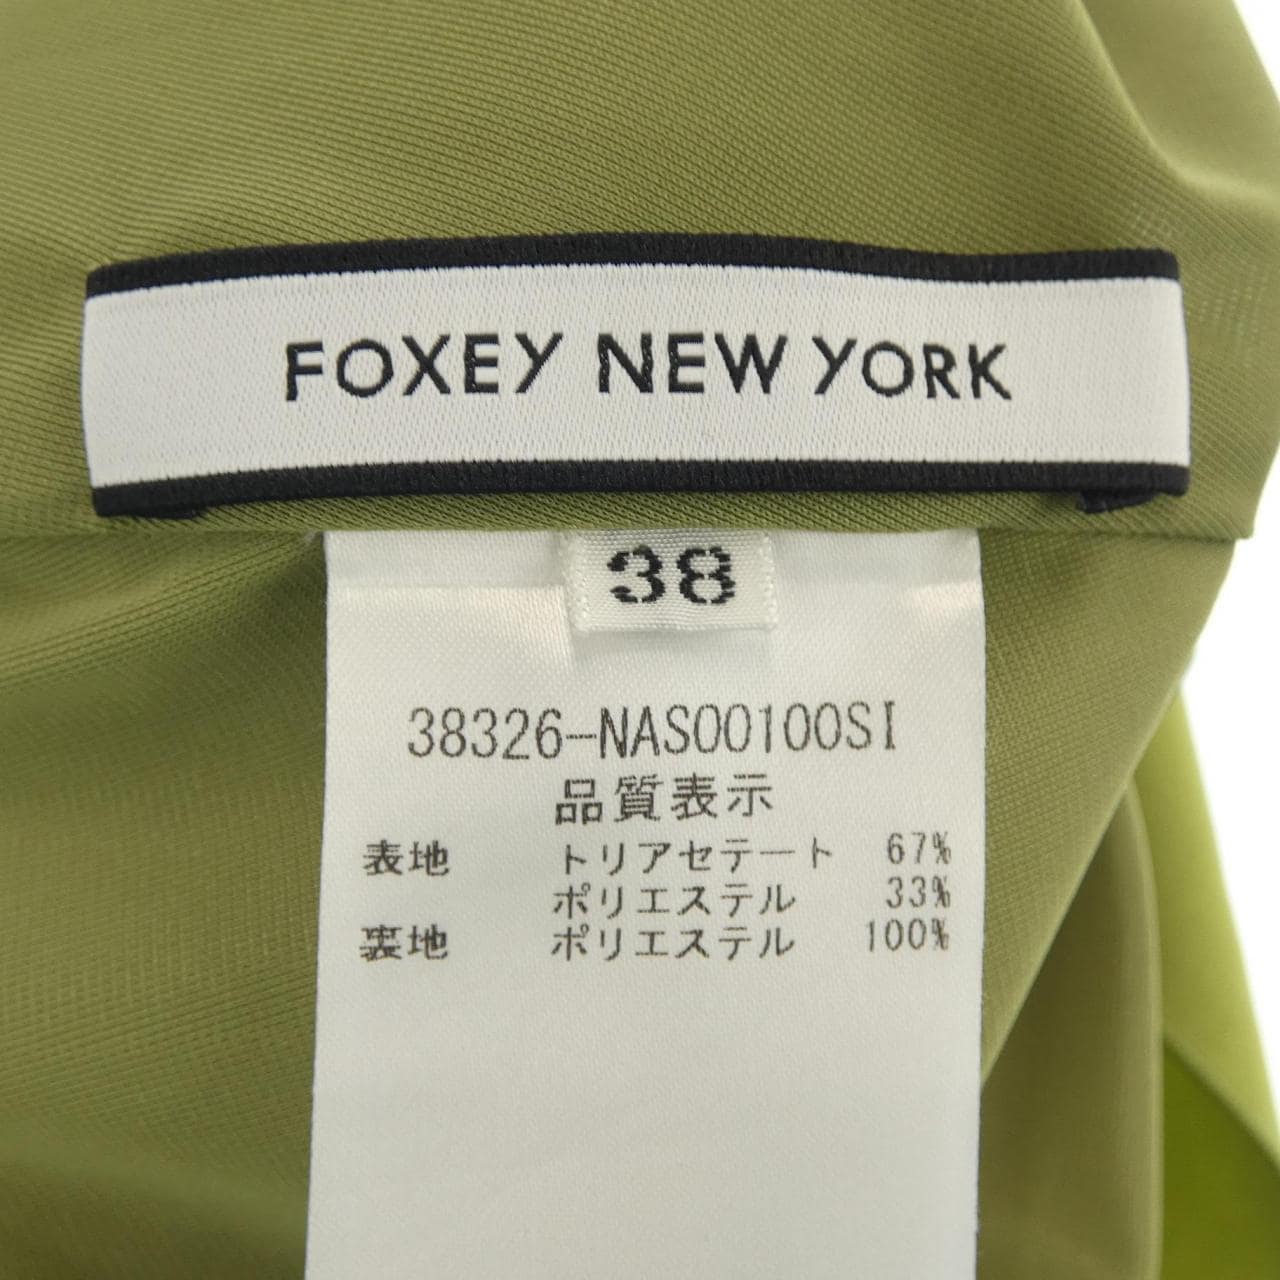 福西纽约FOXEY NEW YORK裙